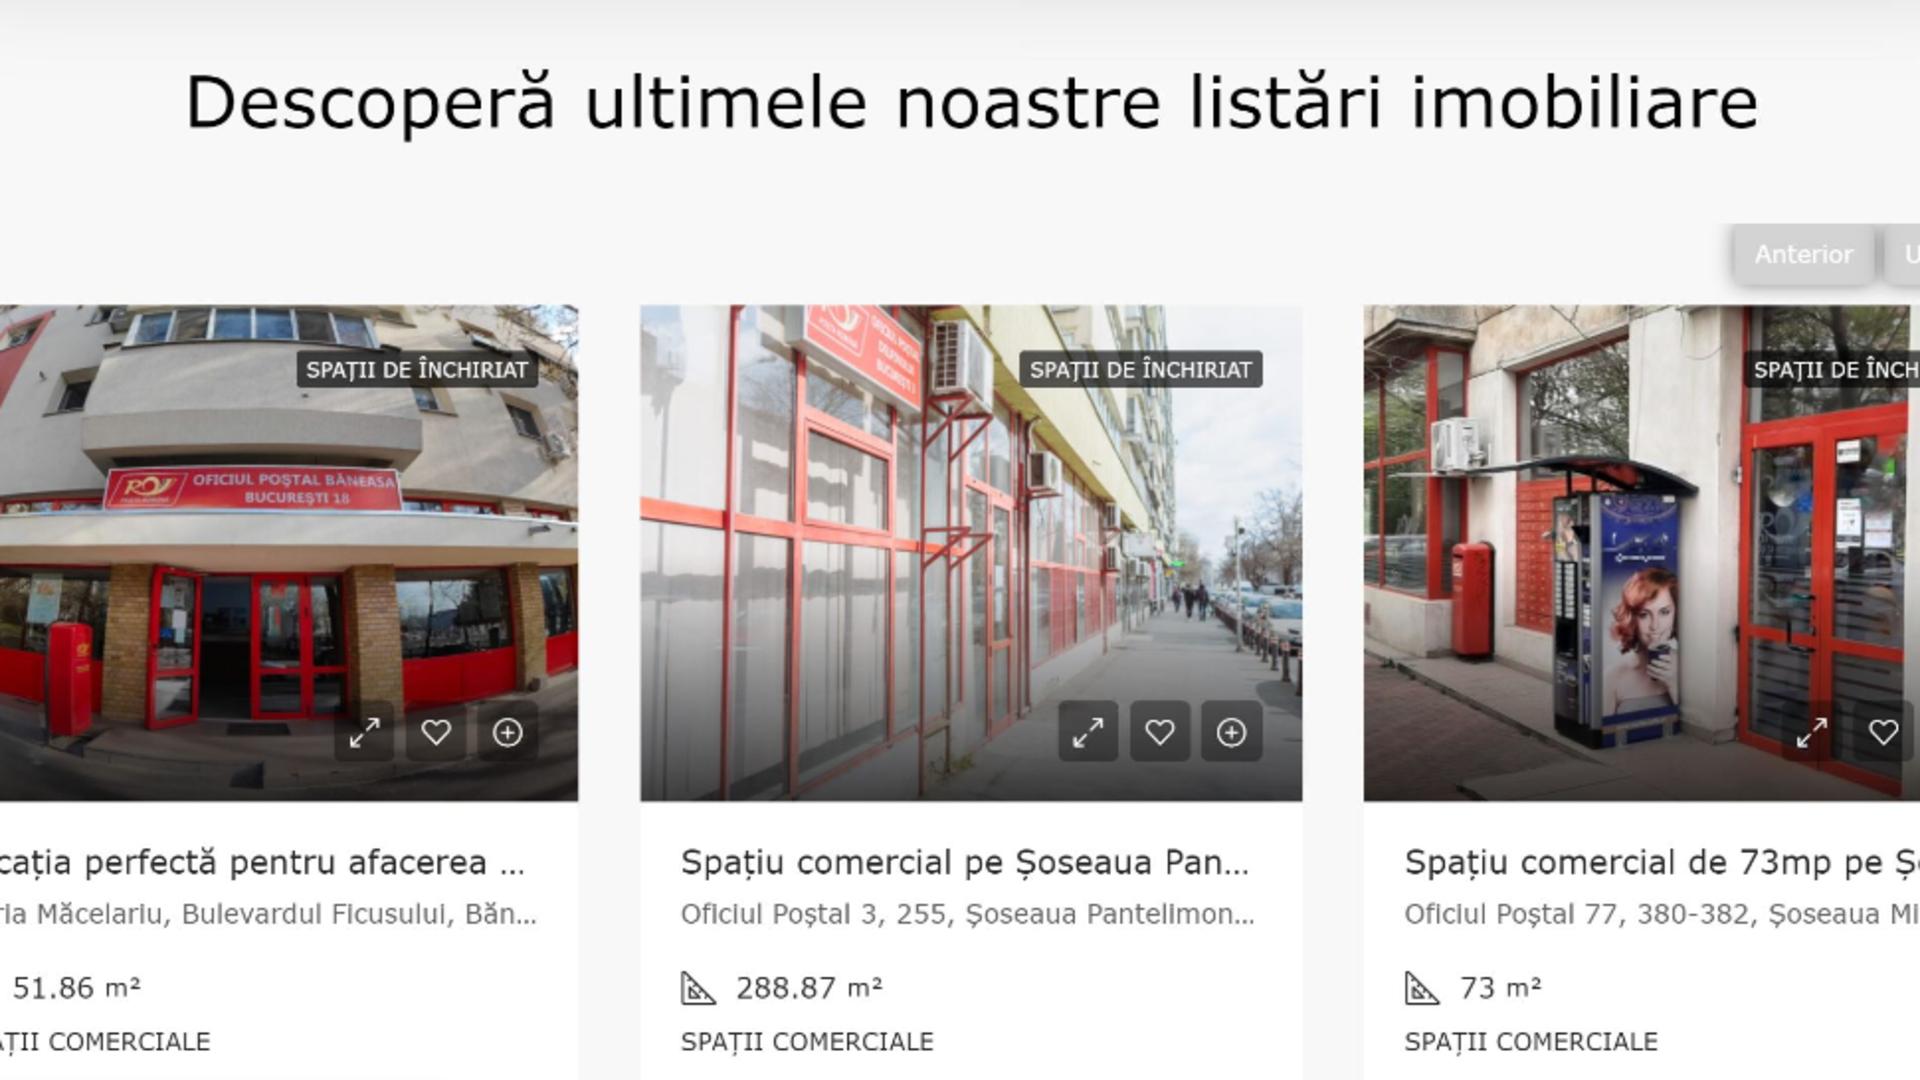 Poșta Română are și site de imobiliare. Peste 500 de proprietăți sunt la vânzare